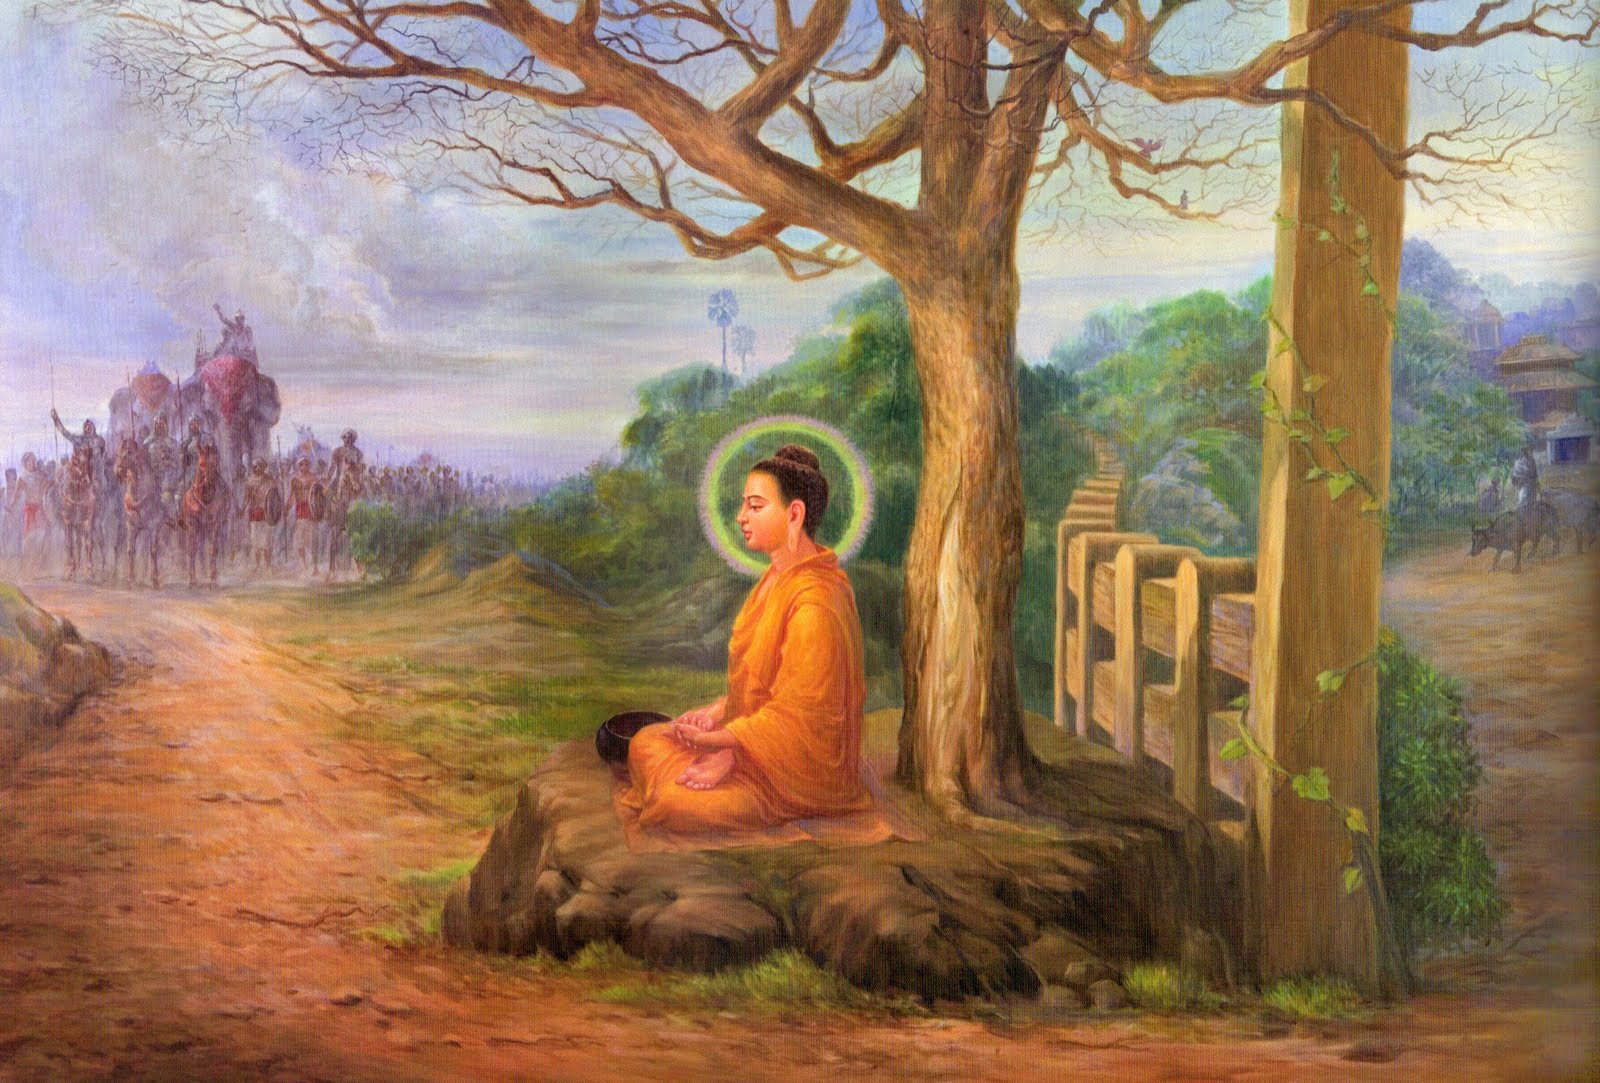 Khi đức Phật còn tại thế, Ngài có đặt một câu hỏi cho một vị Sa môn là: “Tuổi thọ của con người dài trong bao lâu?” và vị Sa môn đã trả lời là: “Chỉ dài bằng một hơi thở”. Đức Phật nói: “Đúng vậy. Ông là người hiểu đạo”.